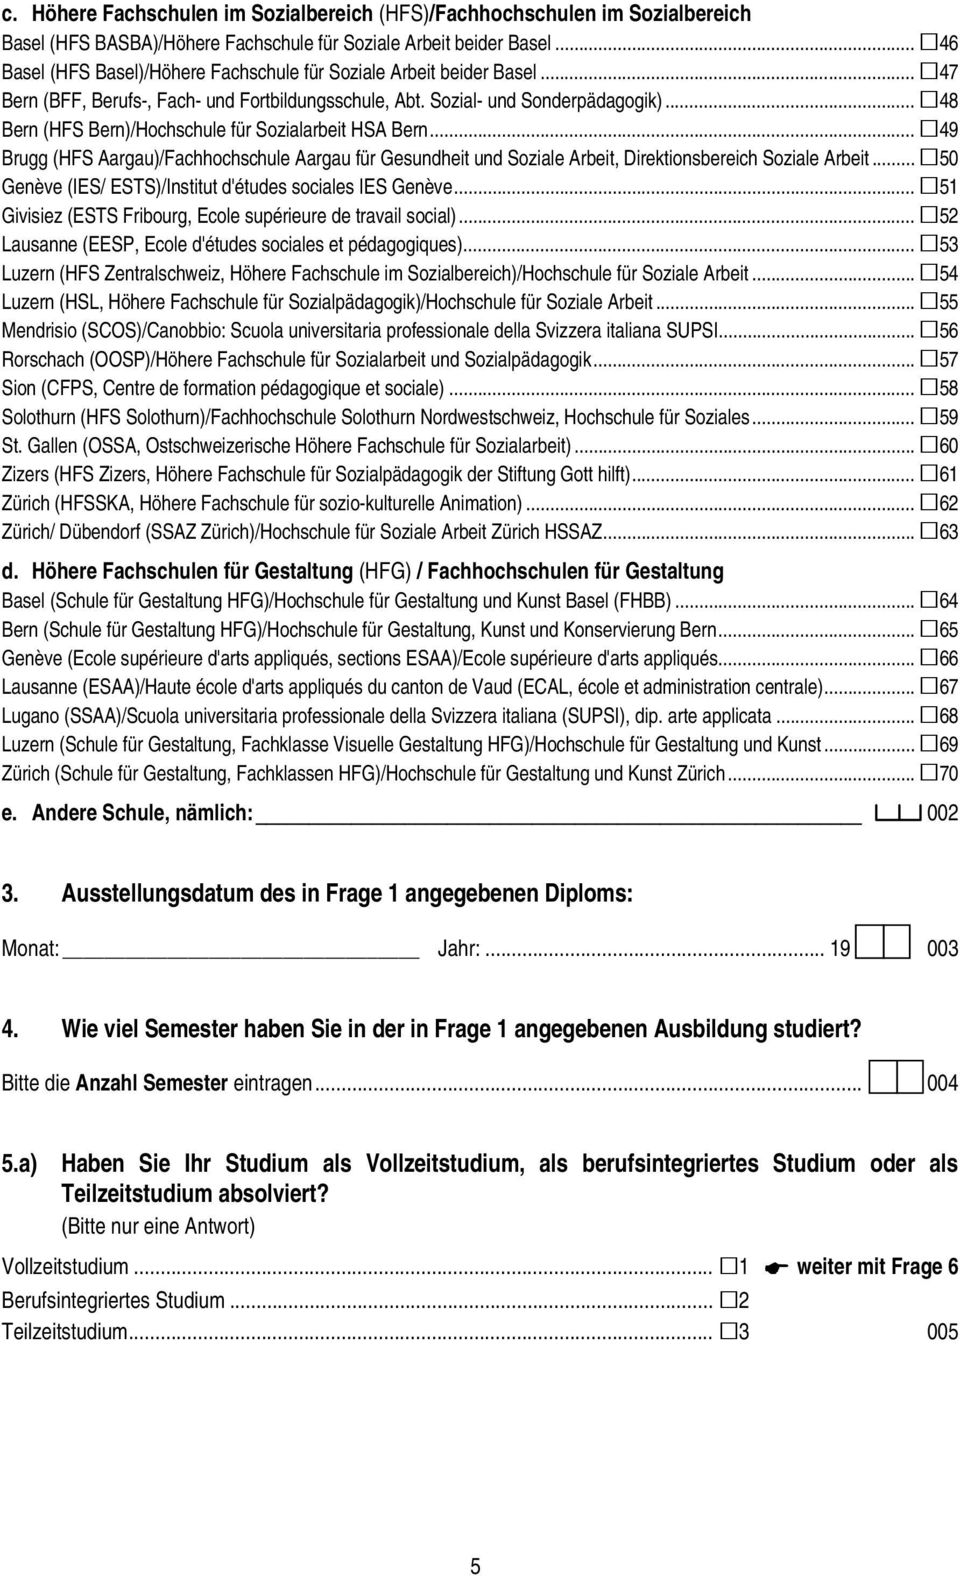 .. 48 Bern (HFS Bern)/Hochschule für Sozialarbeit HSA Bern... 49 Brugg (HFS Aargau)/Fachhochschule Aargau für Gesundheit und Soziale Arbeit, Direktionsbereich Soziale Arbeit.